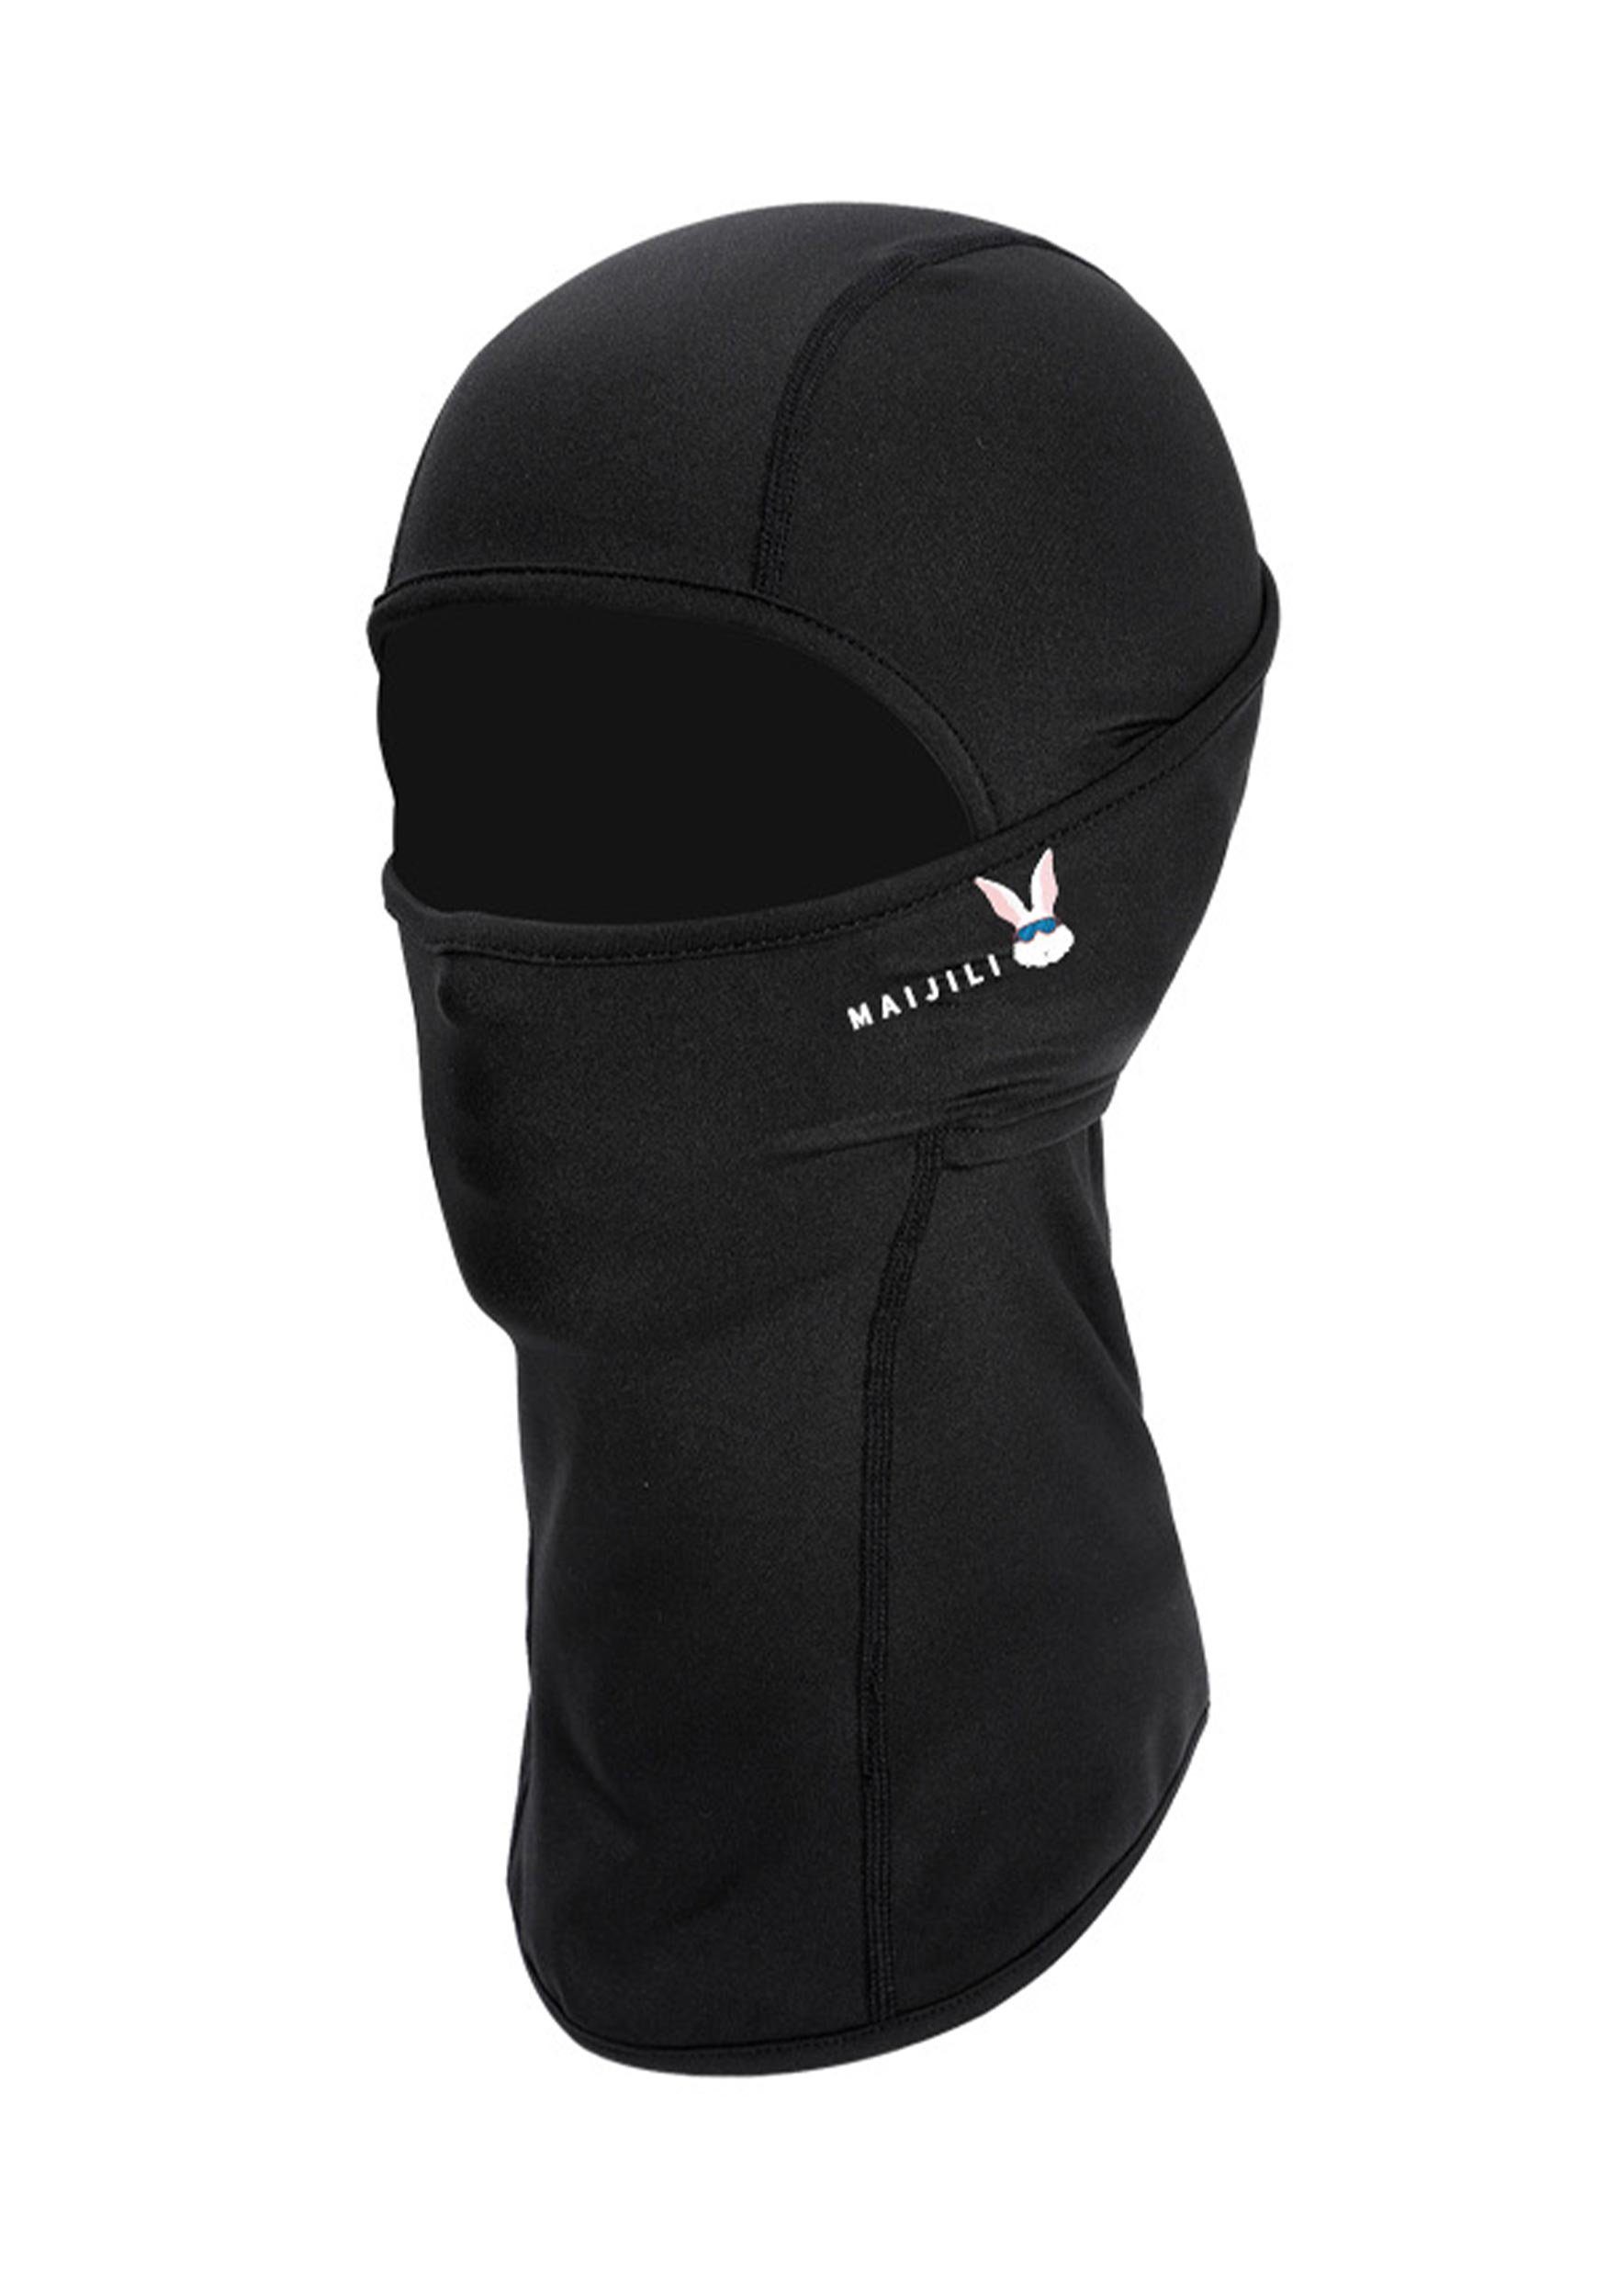 MAGICSHE Sturmhaube Skimaske für Umfassenden Schutz Widersteht UV-Strahlen Schwarz